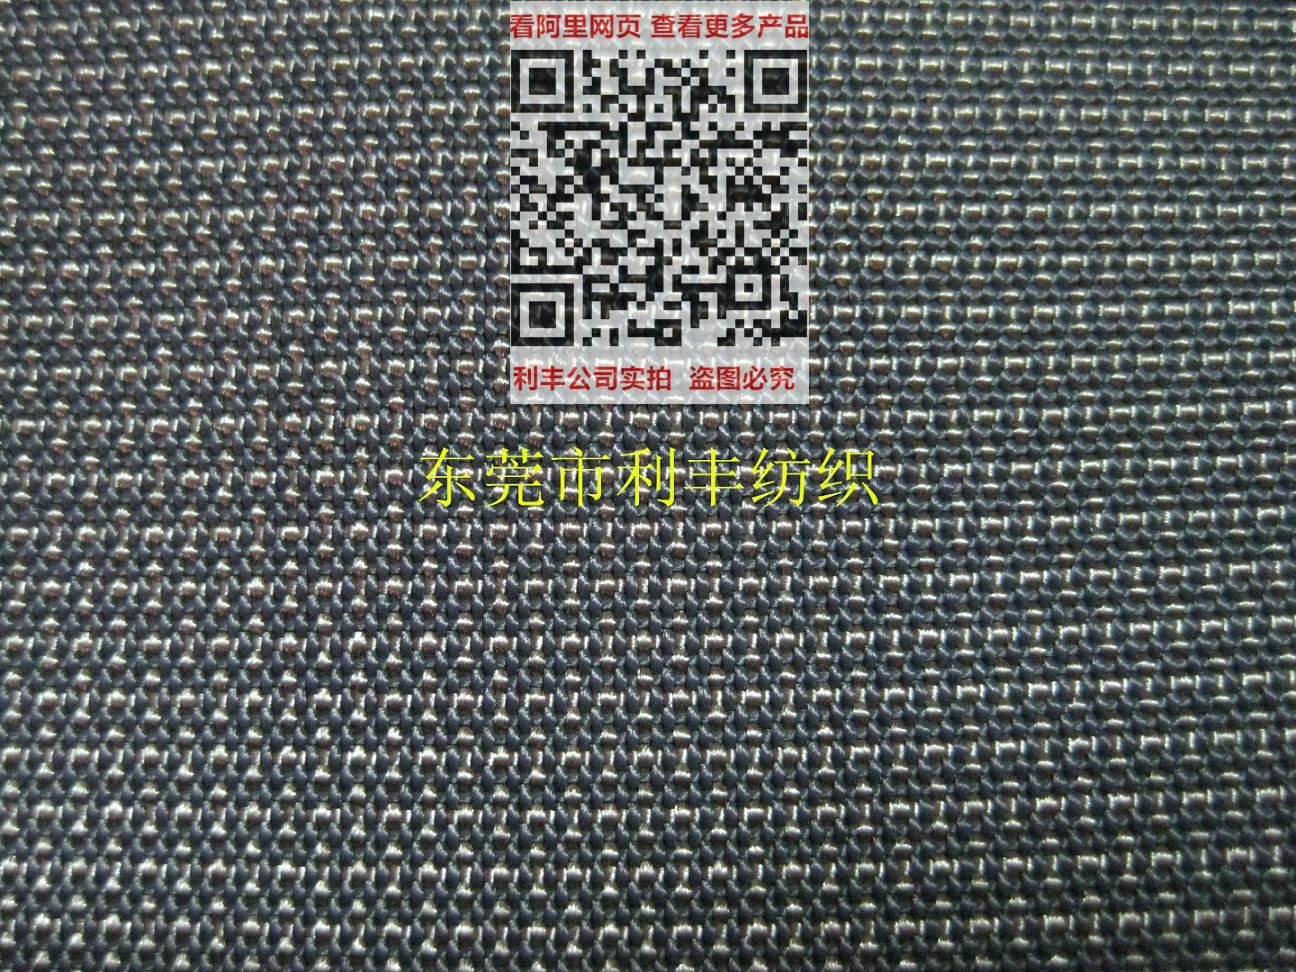 Dupont kevlar yarn  abrasion resistance fabric series 3